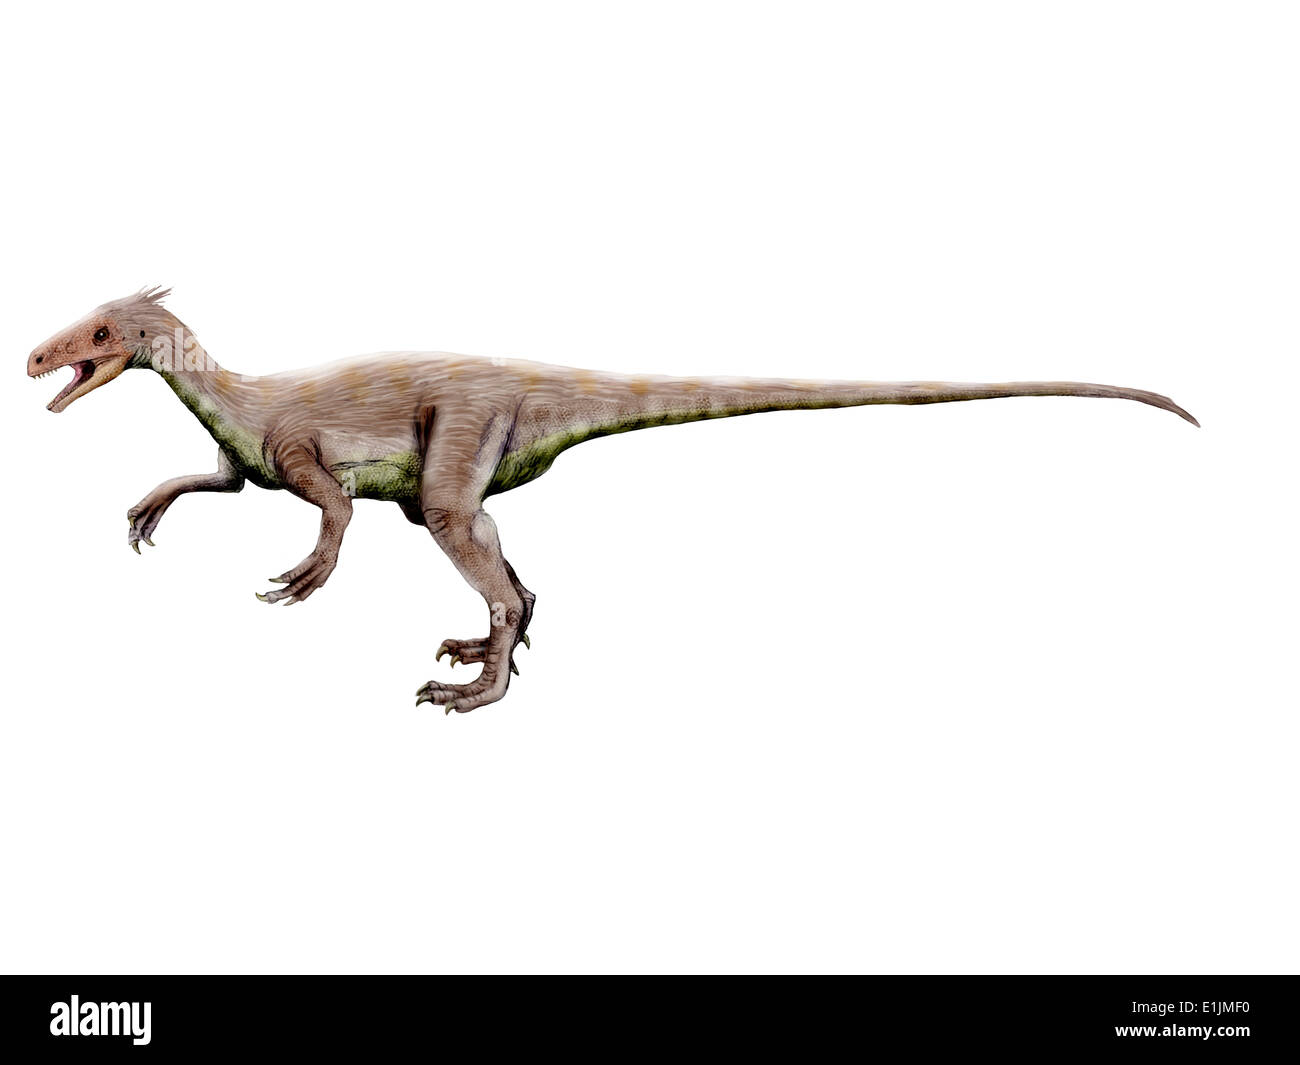 Ornitholestes dinosaur, white background. Stock Photo